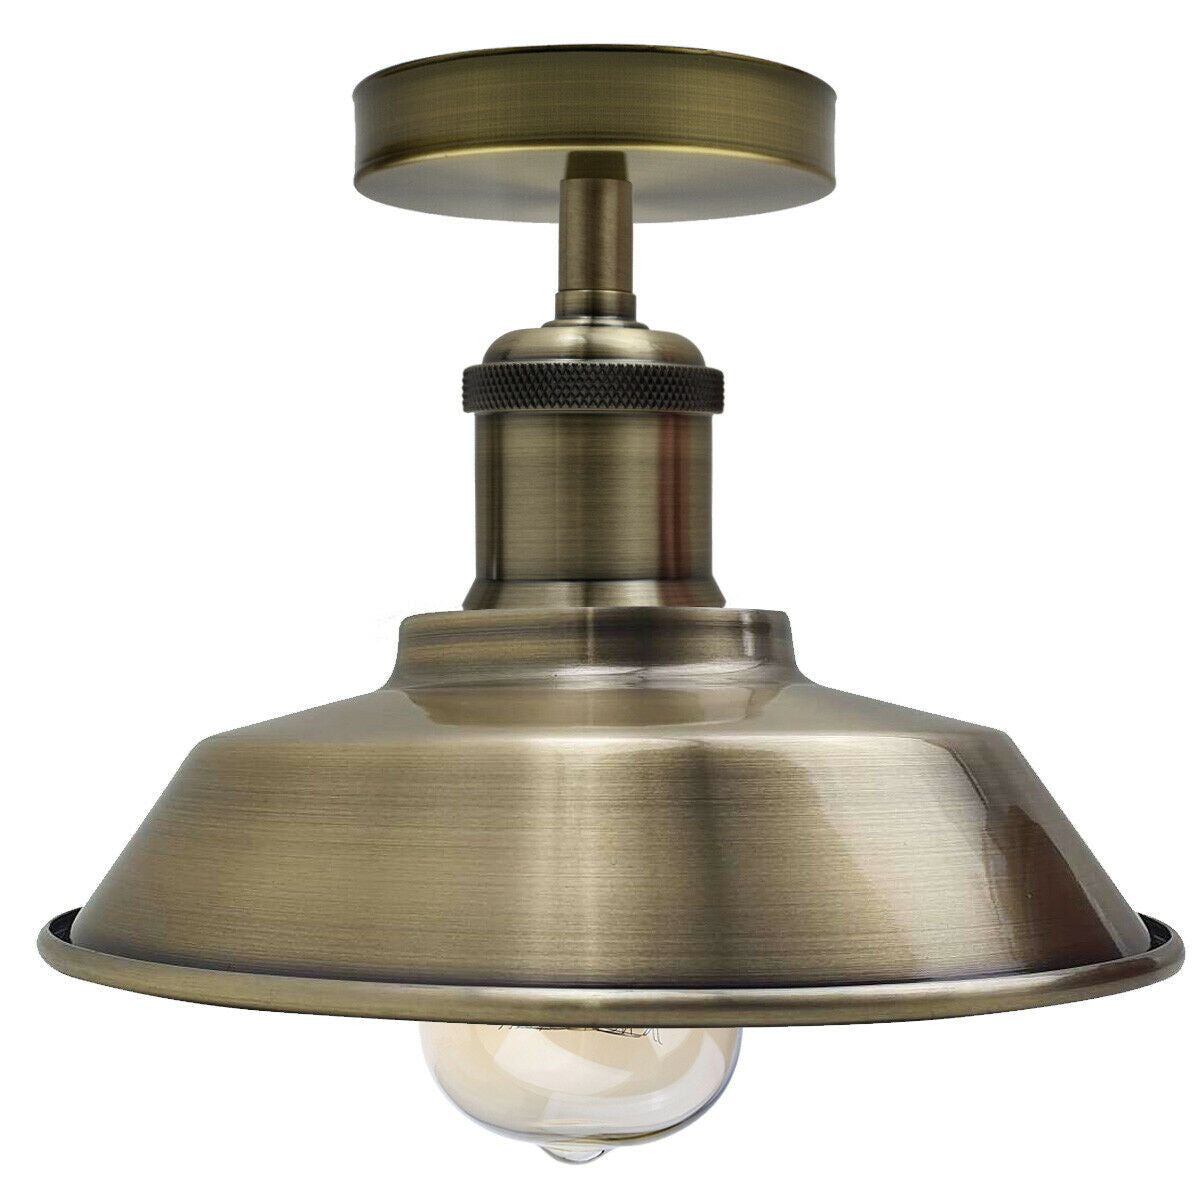 Ceiling Light Retro Flush Mount Ceiling Barn Slotted Lamp Shade Fitting Green Brass E27 holder uk~1926 - LEDSone UK Ltd